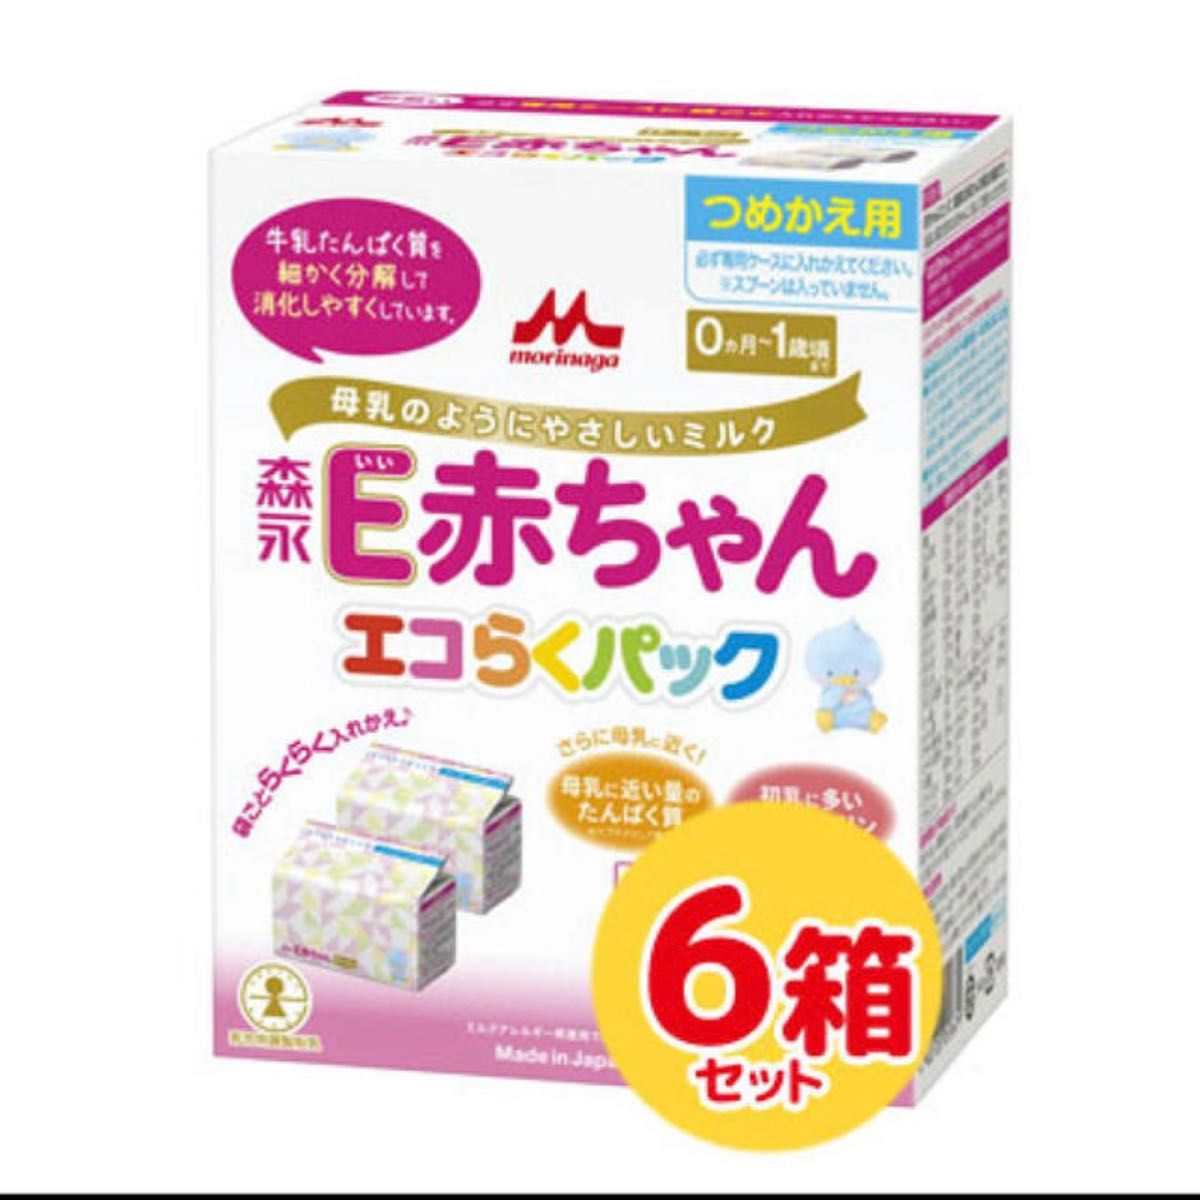 森永E赤ちゃん エコらくパック 詰め替え用 6箱 授乳、食事用品 授乳